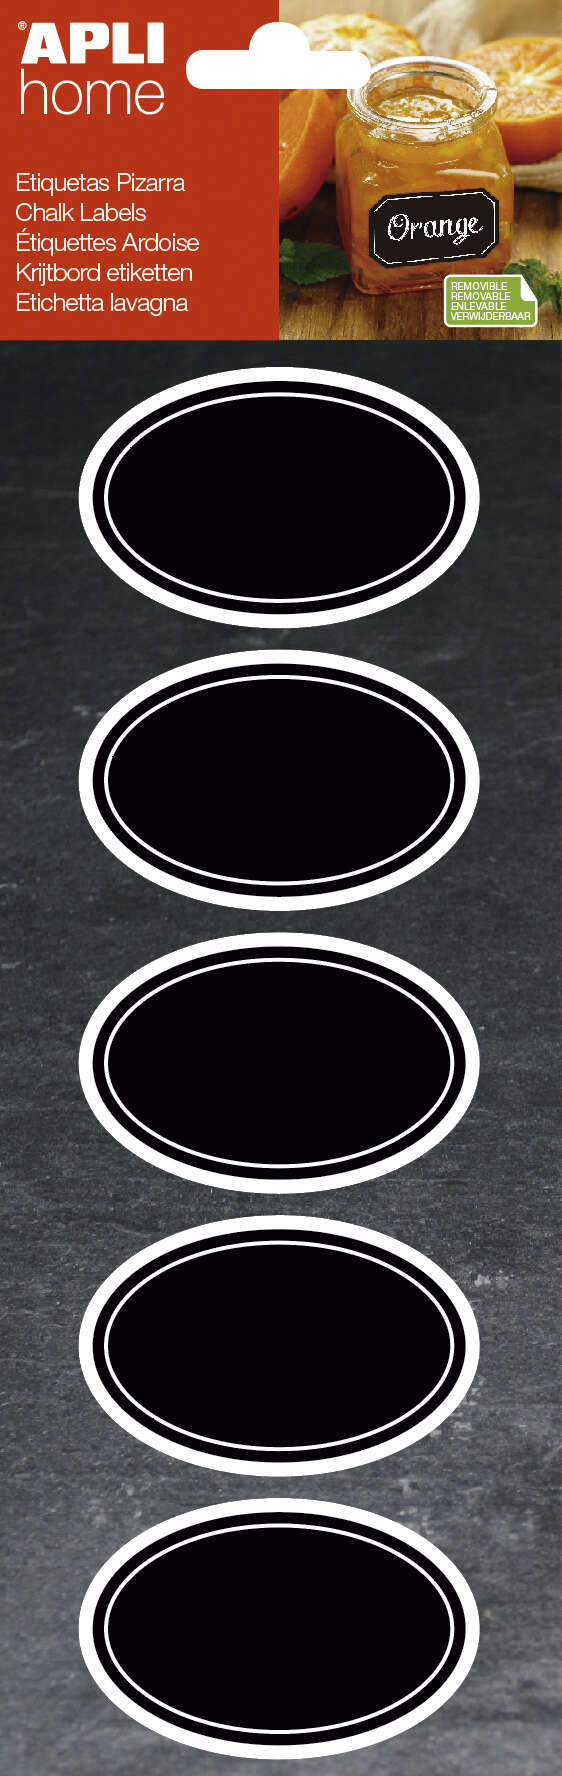 Apli Etiquetas Pizarra Ovaladas 65X41Mm - Adhesivo Removible - 2 Hojas (10 Etiquetas) - Escritura Con Tiza Liquida O Convencional - Borrado Facil - Ideal Para Tarros, Macetas, Regalos - Color Negro